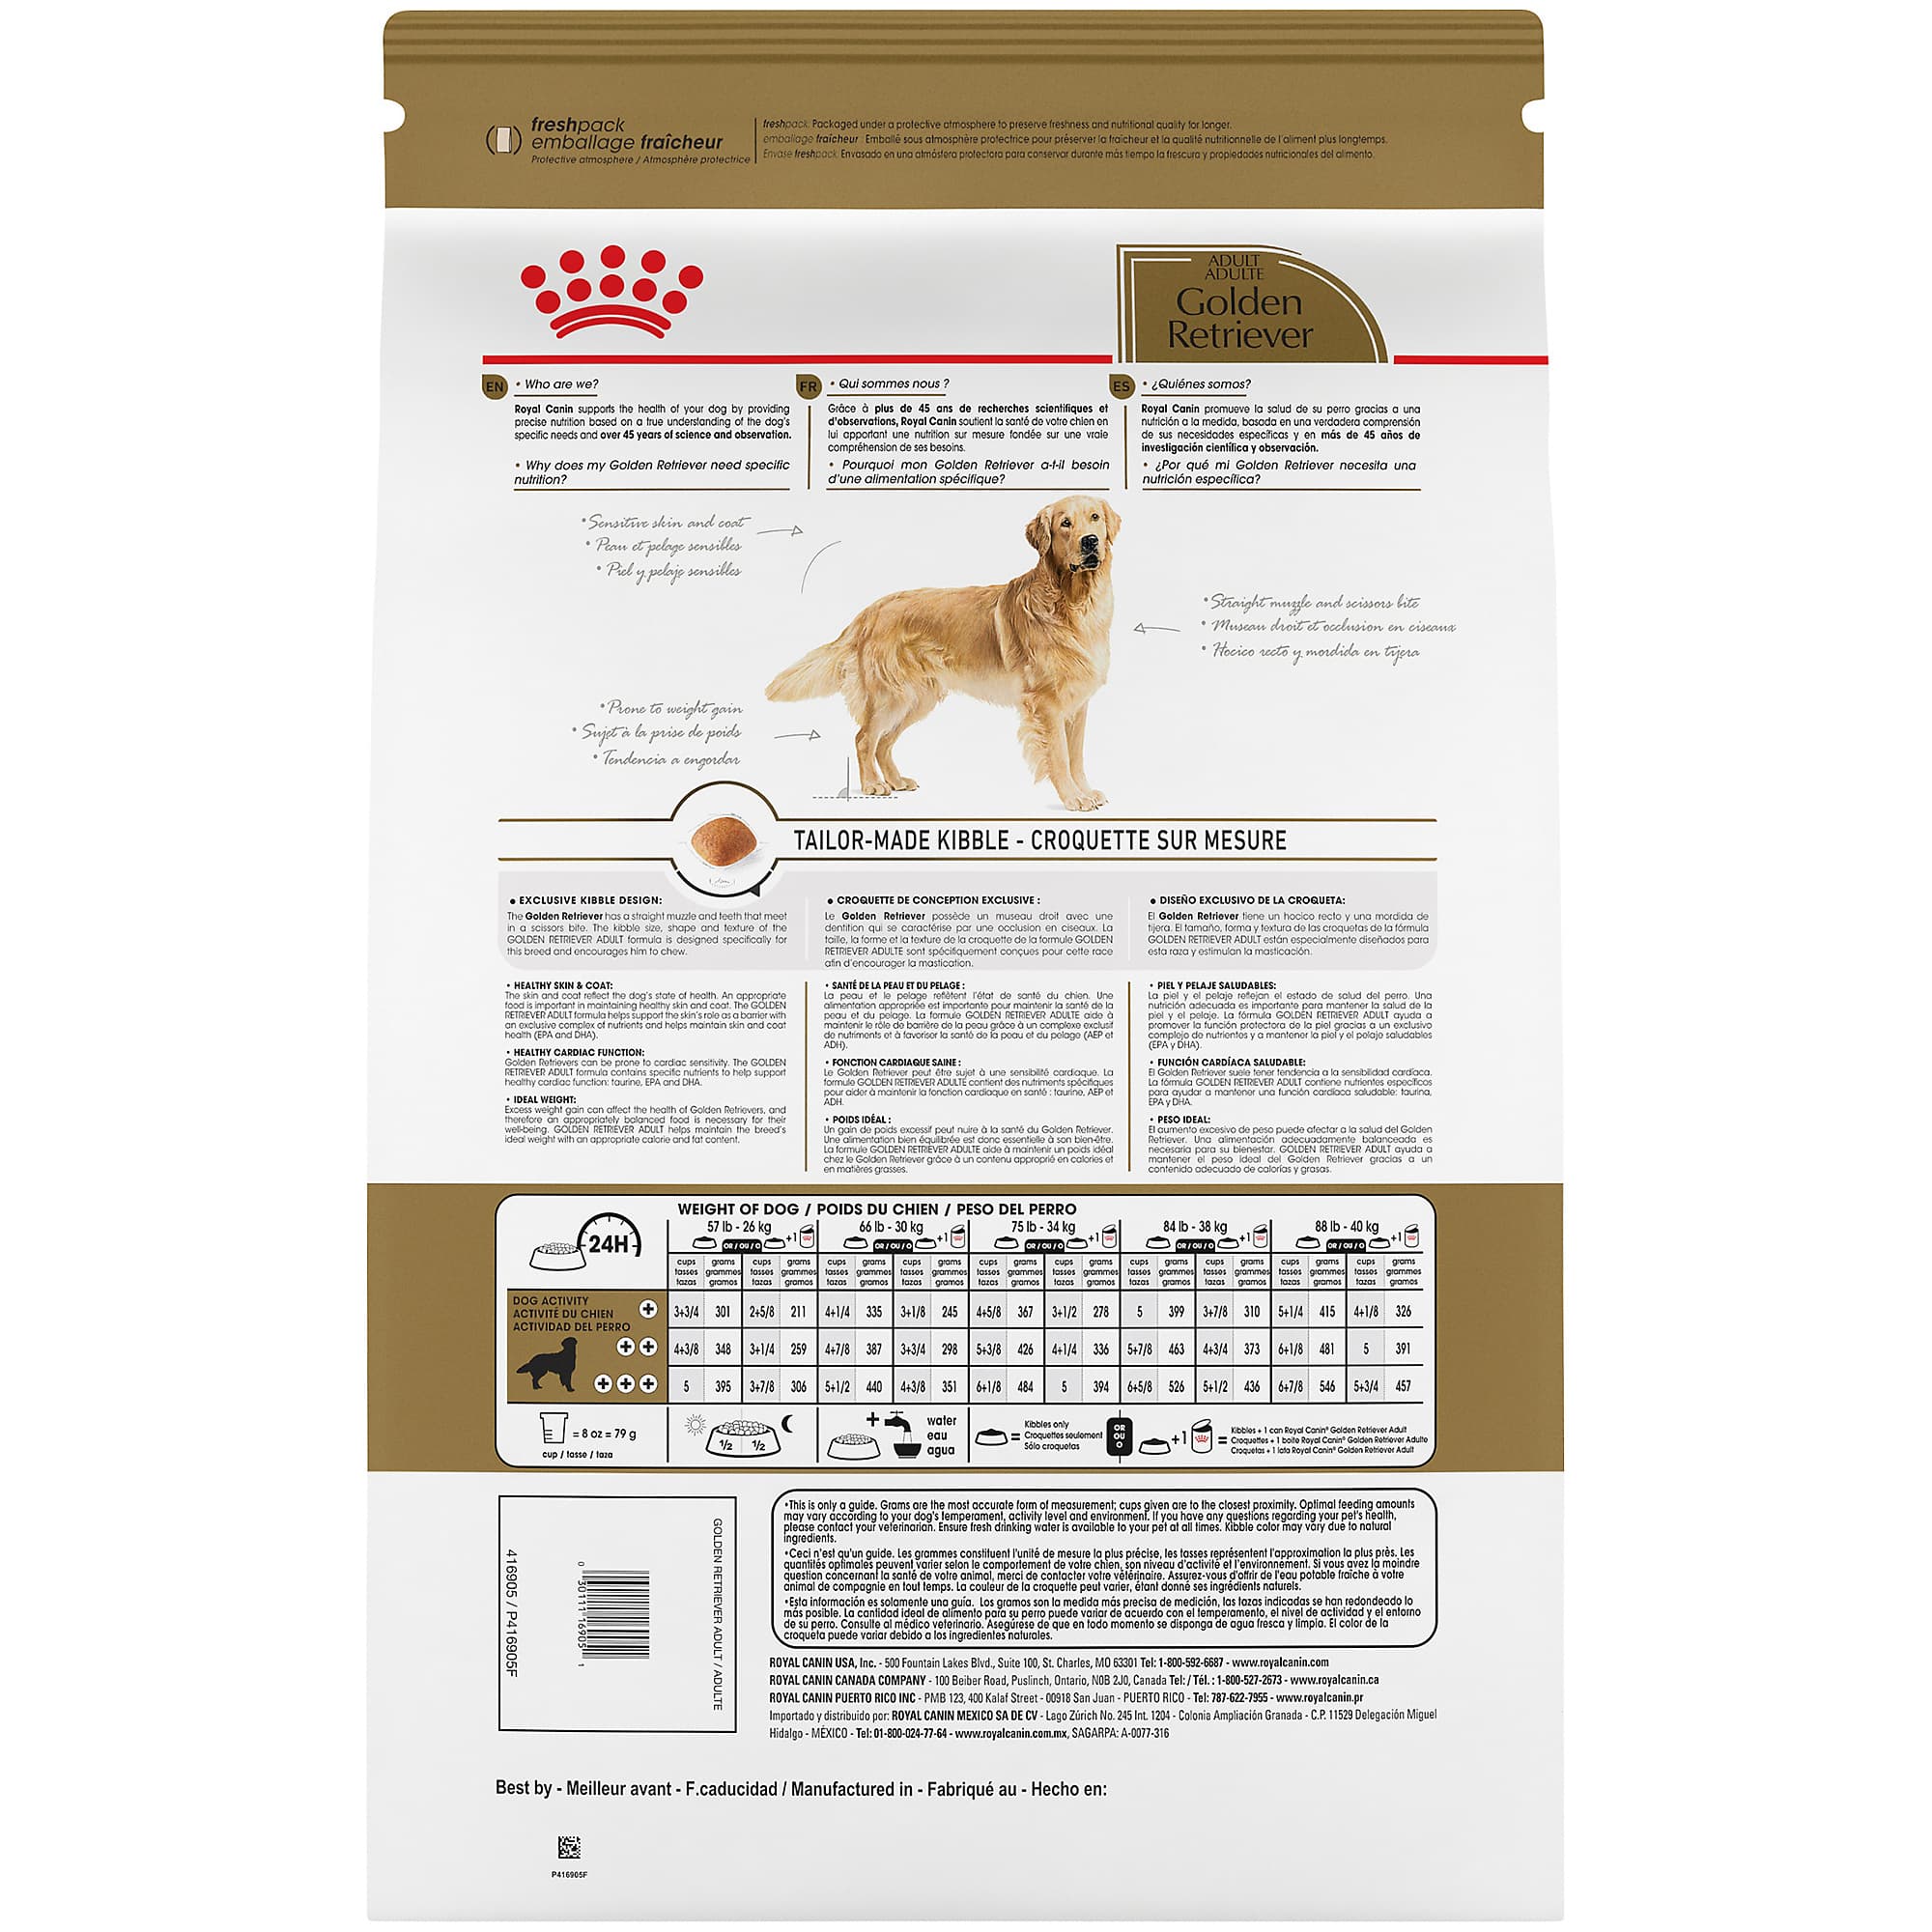 royal canin golden retriever puppy food chart